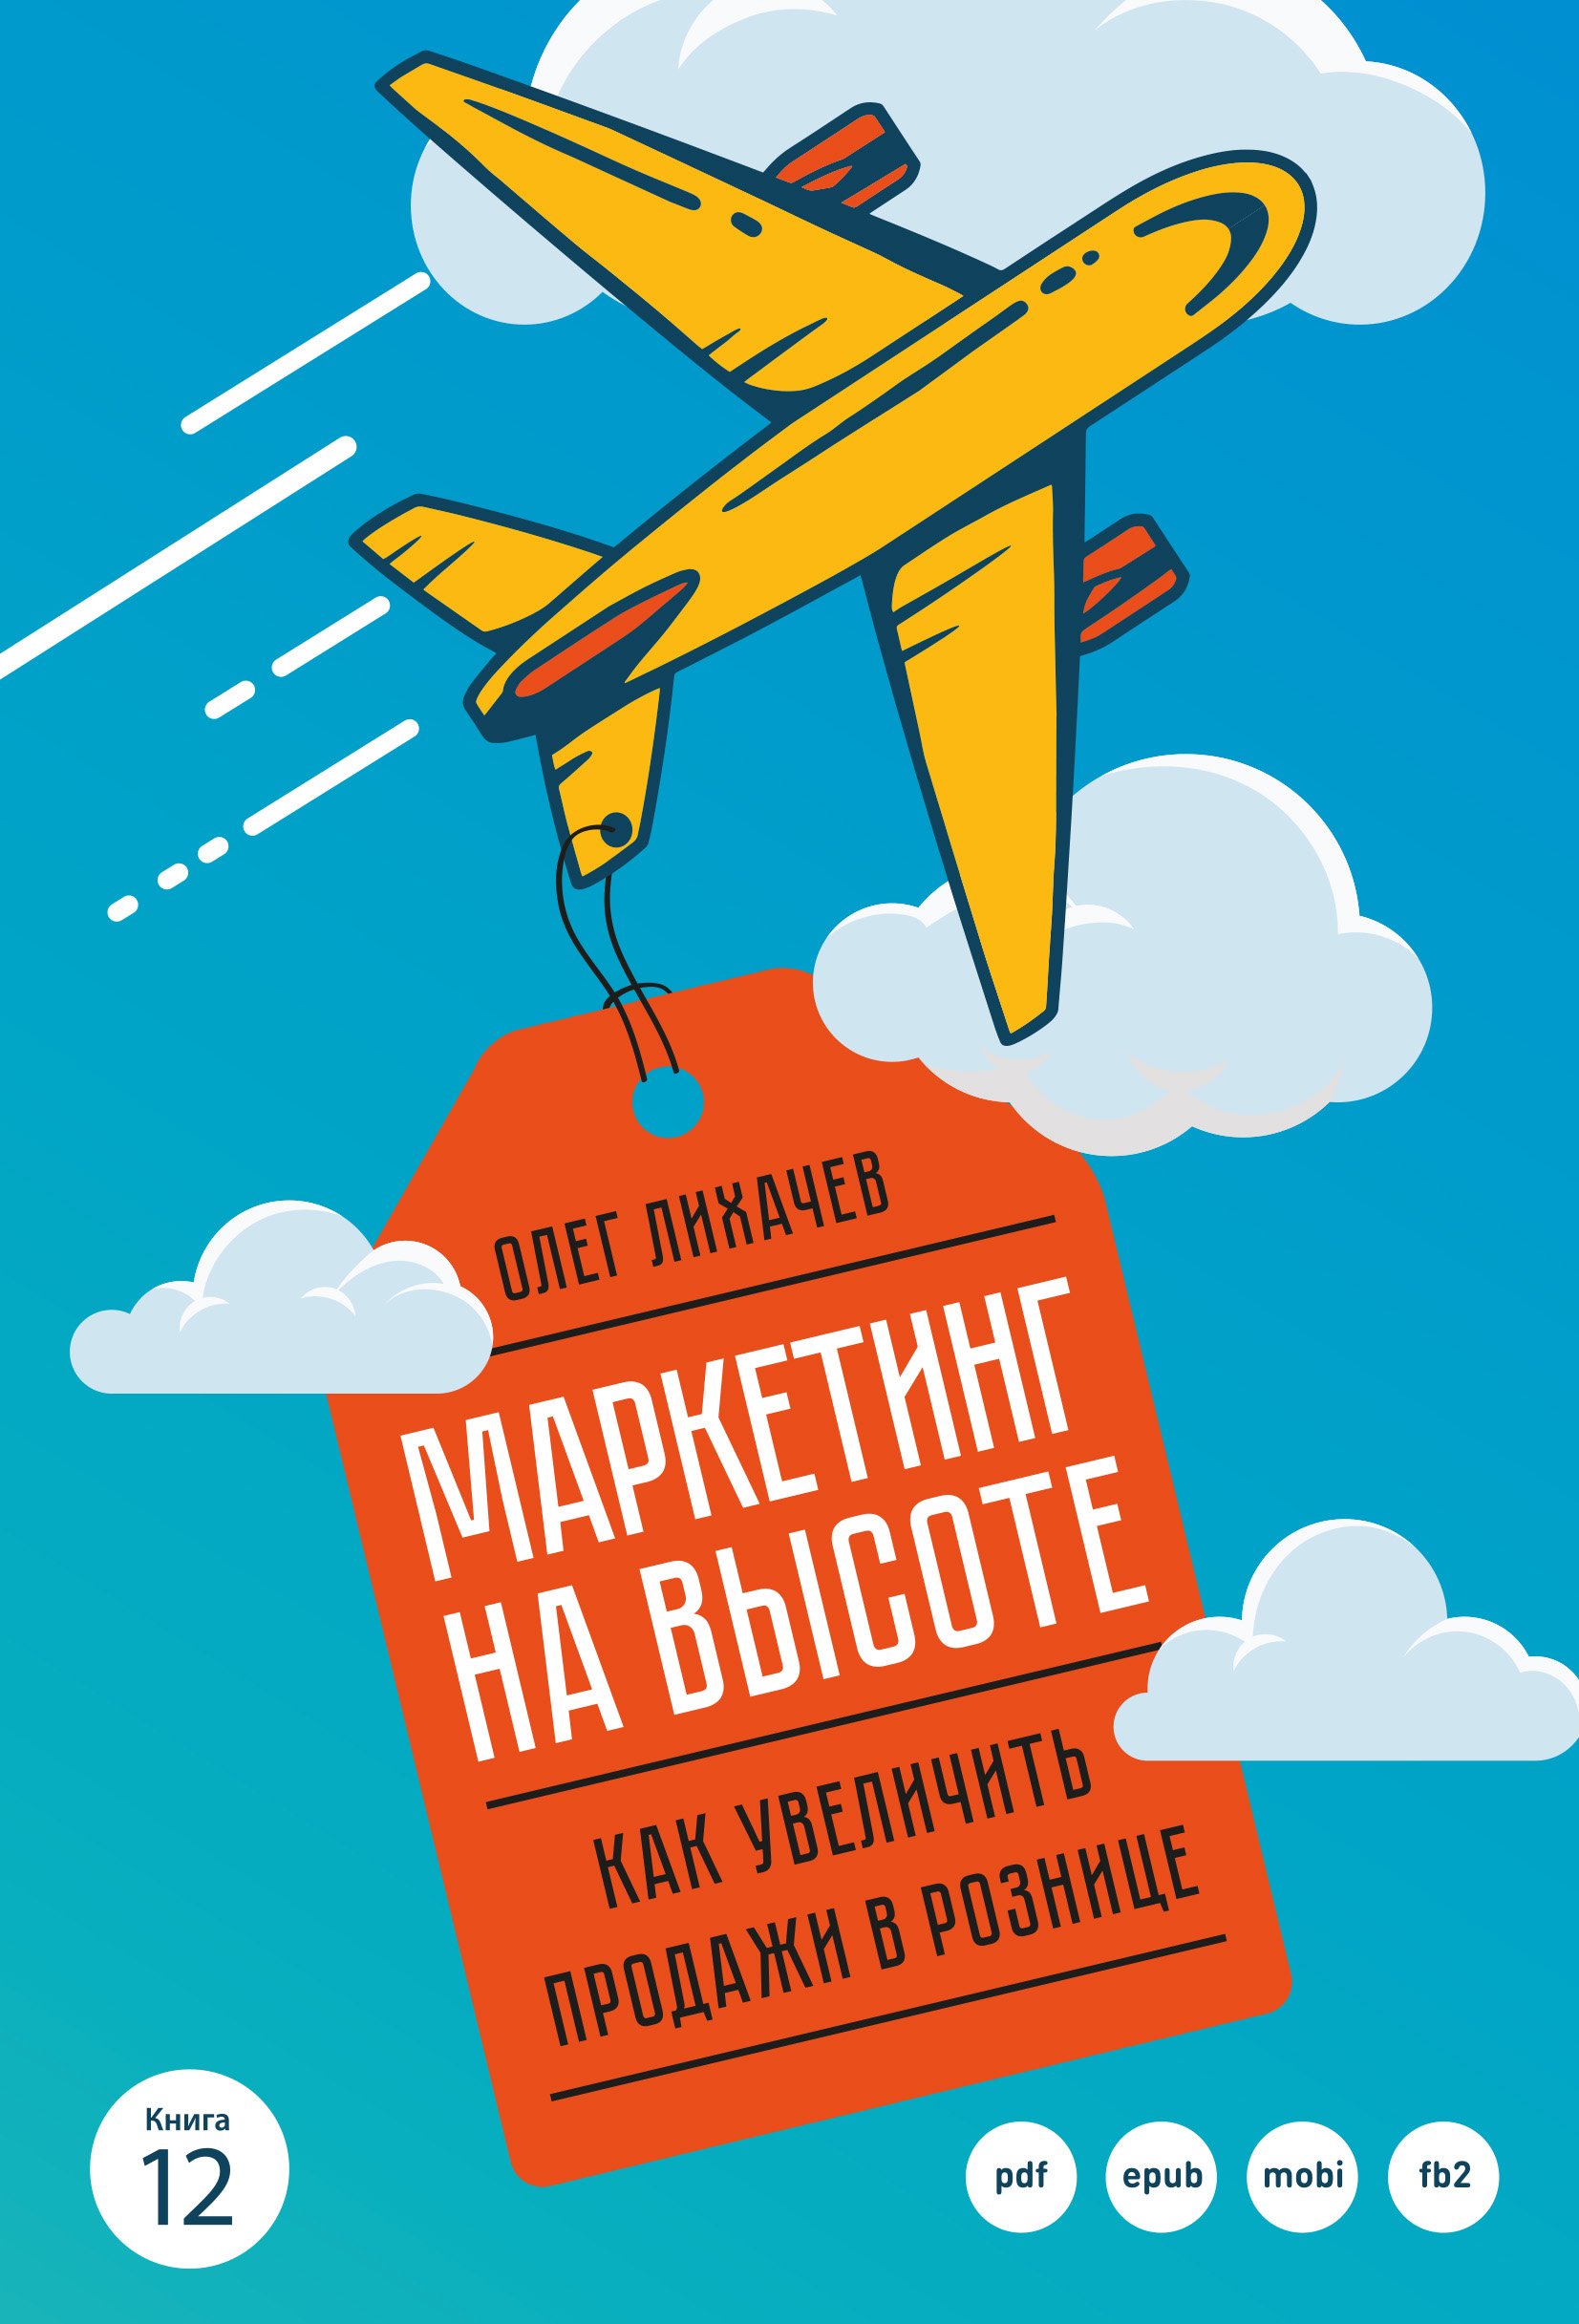 Книга Маркетинг на высоте из серии , созданная Олег Лихачев, может относится к жанру Маркетинг, PR, реклама, Маркетинг, PR, реклама, Маркетинг, PR, реклама. Стоимость электронной книги Маркетинг на высоте с идентификатором 43144363 составляет 900.00 руб.